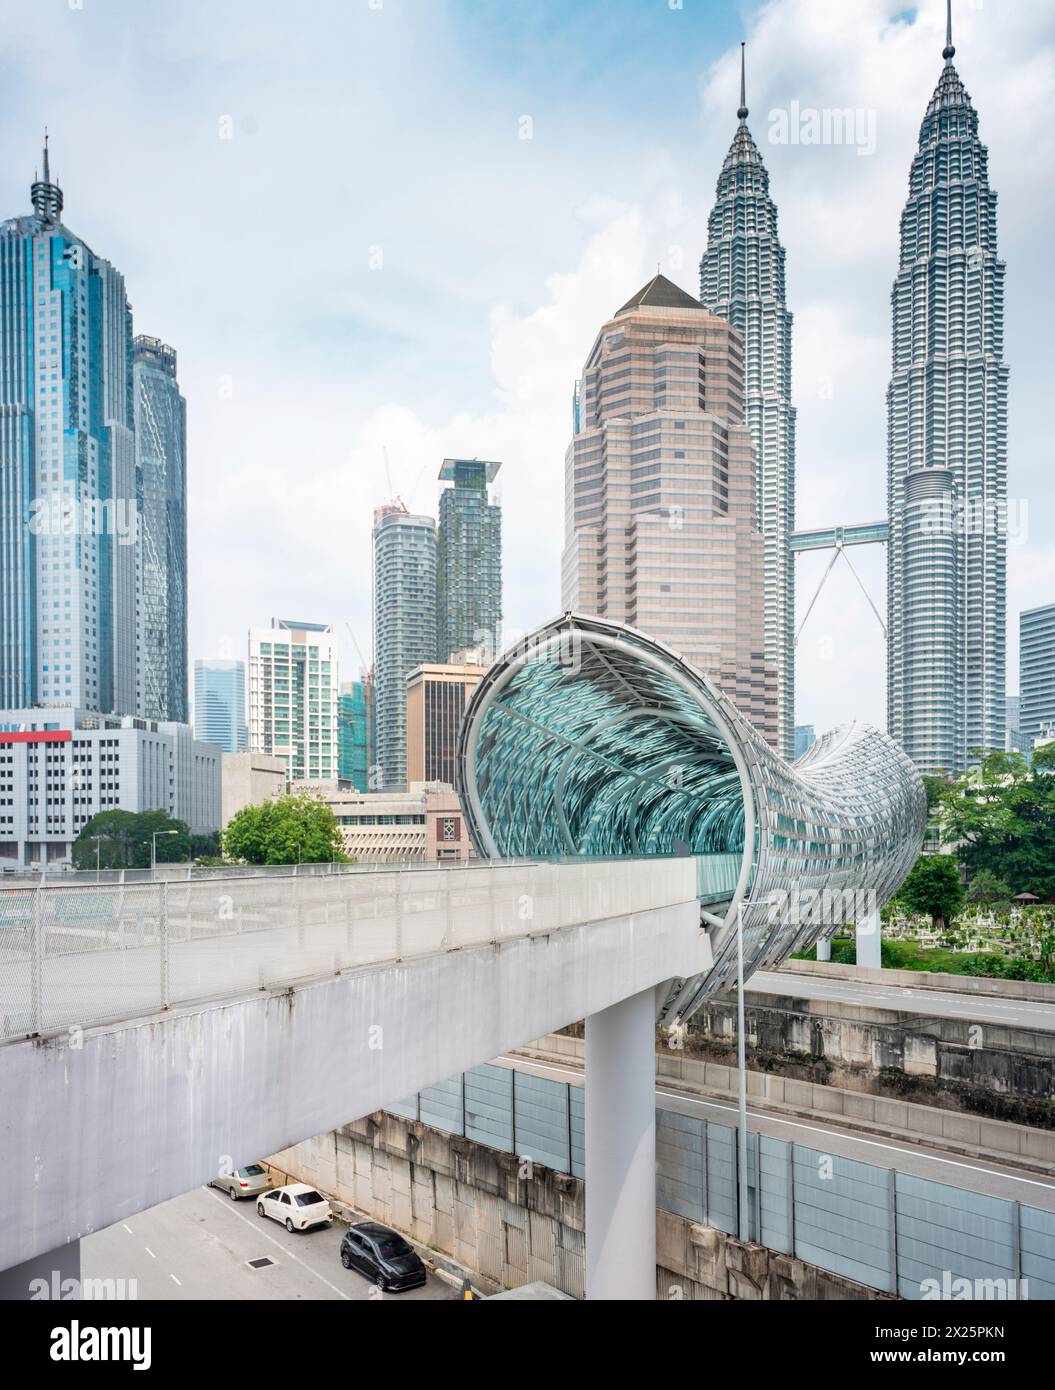 Lo squisito e moderno ponte coperto, aperto nel 2020, conduce dal cimitero musulmano, attraverso il fiume Klang e la trafficata autostrada per il vecchio quartiere di Ka Foto Stock